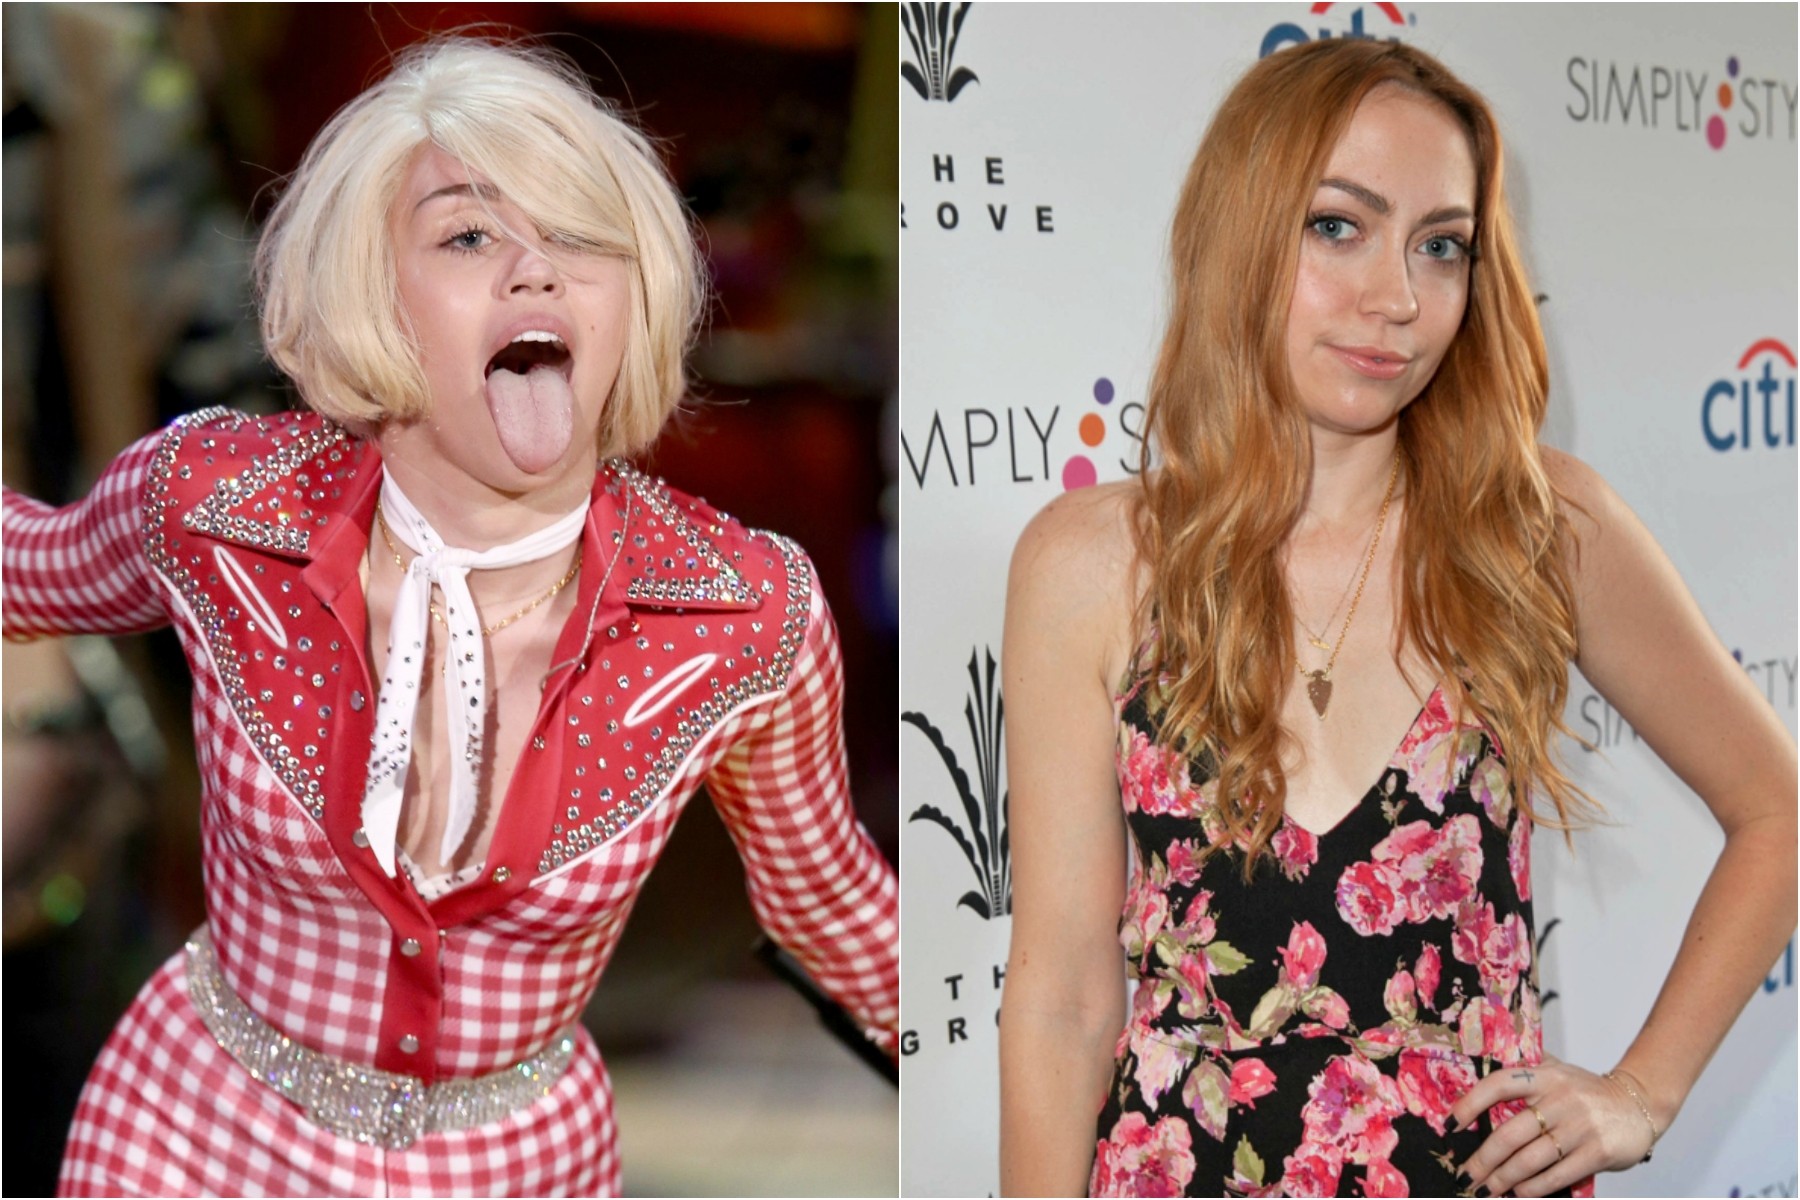 Sabia que Miley Cyrus (à esq.) tem uma mana mais velha? A cantora de 21 anos é irmã da atriz Brandi Cyrus, de 27. (Foto: Getty Images)